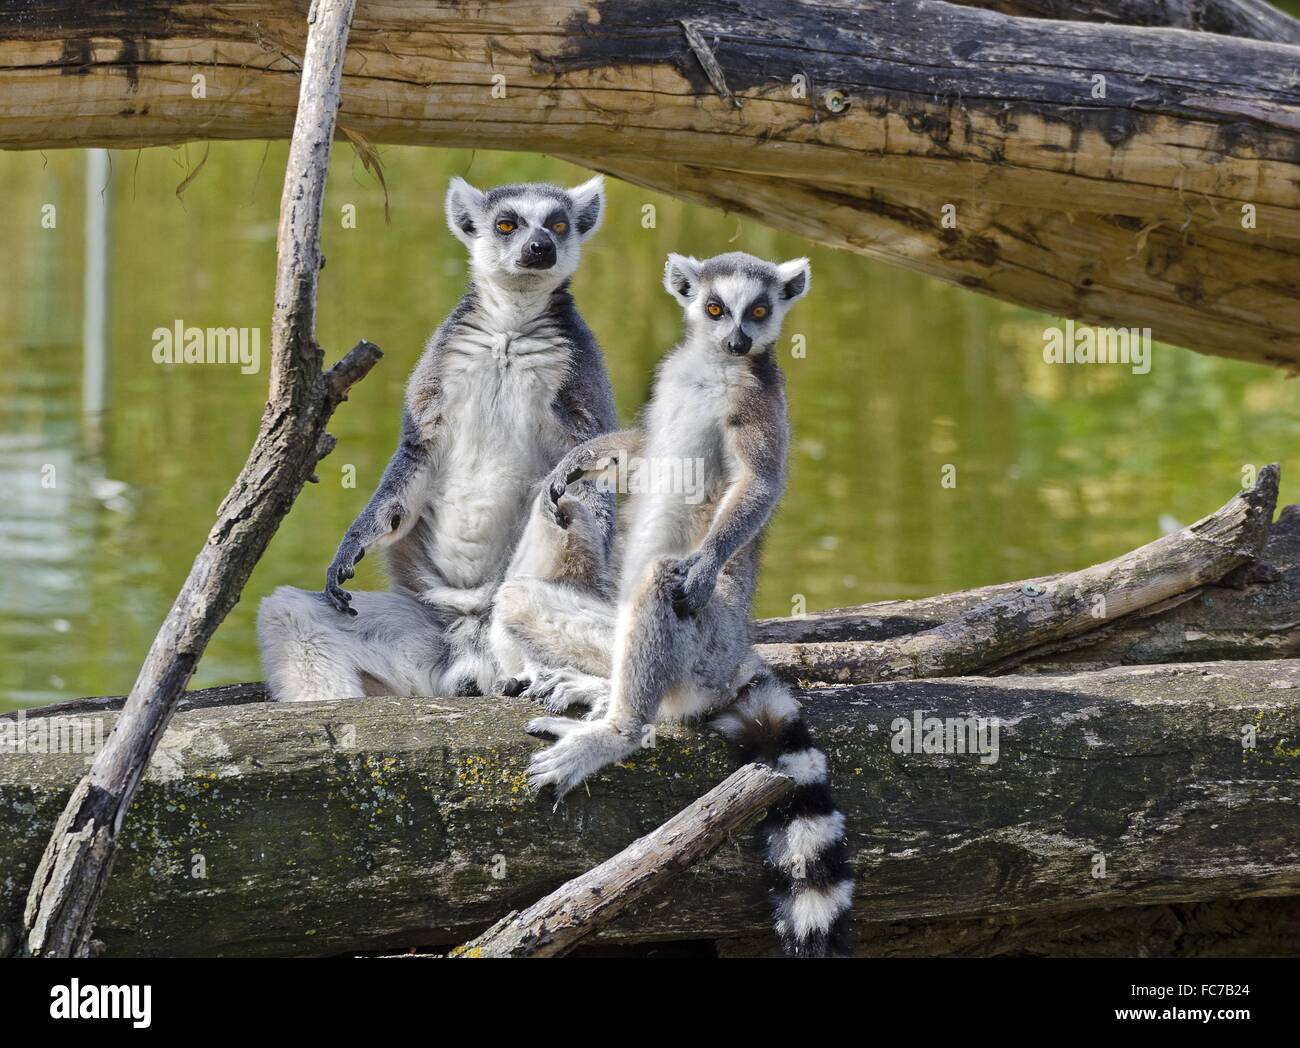 ring-tailed lemurs sitting upright Stock Photo